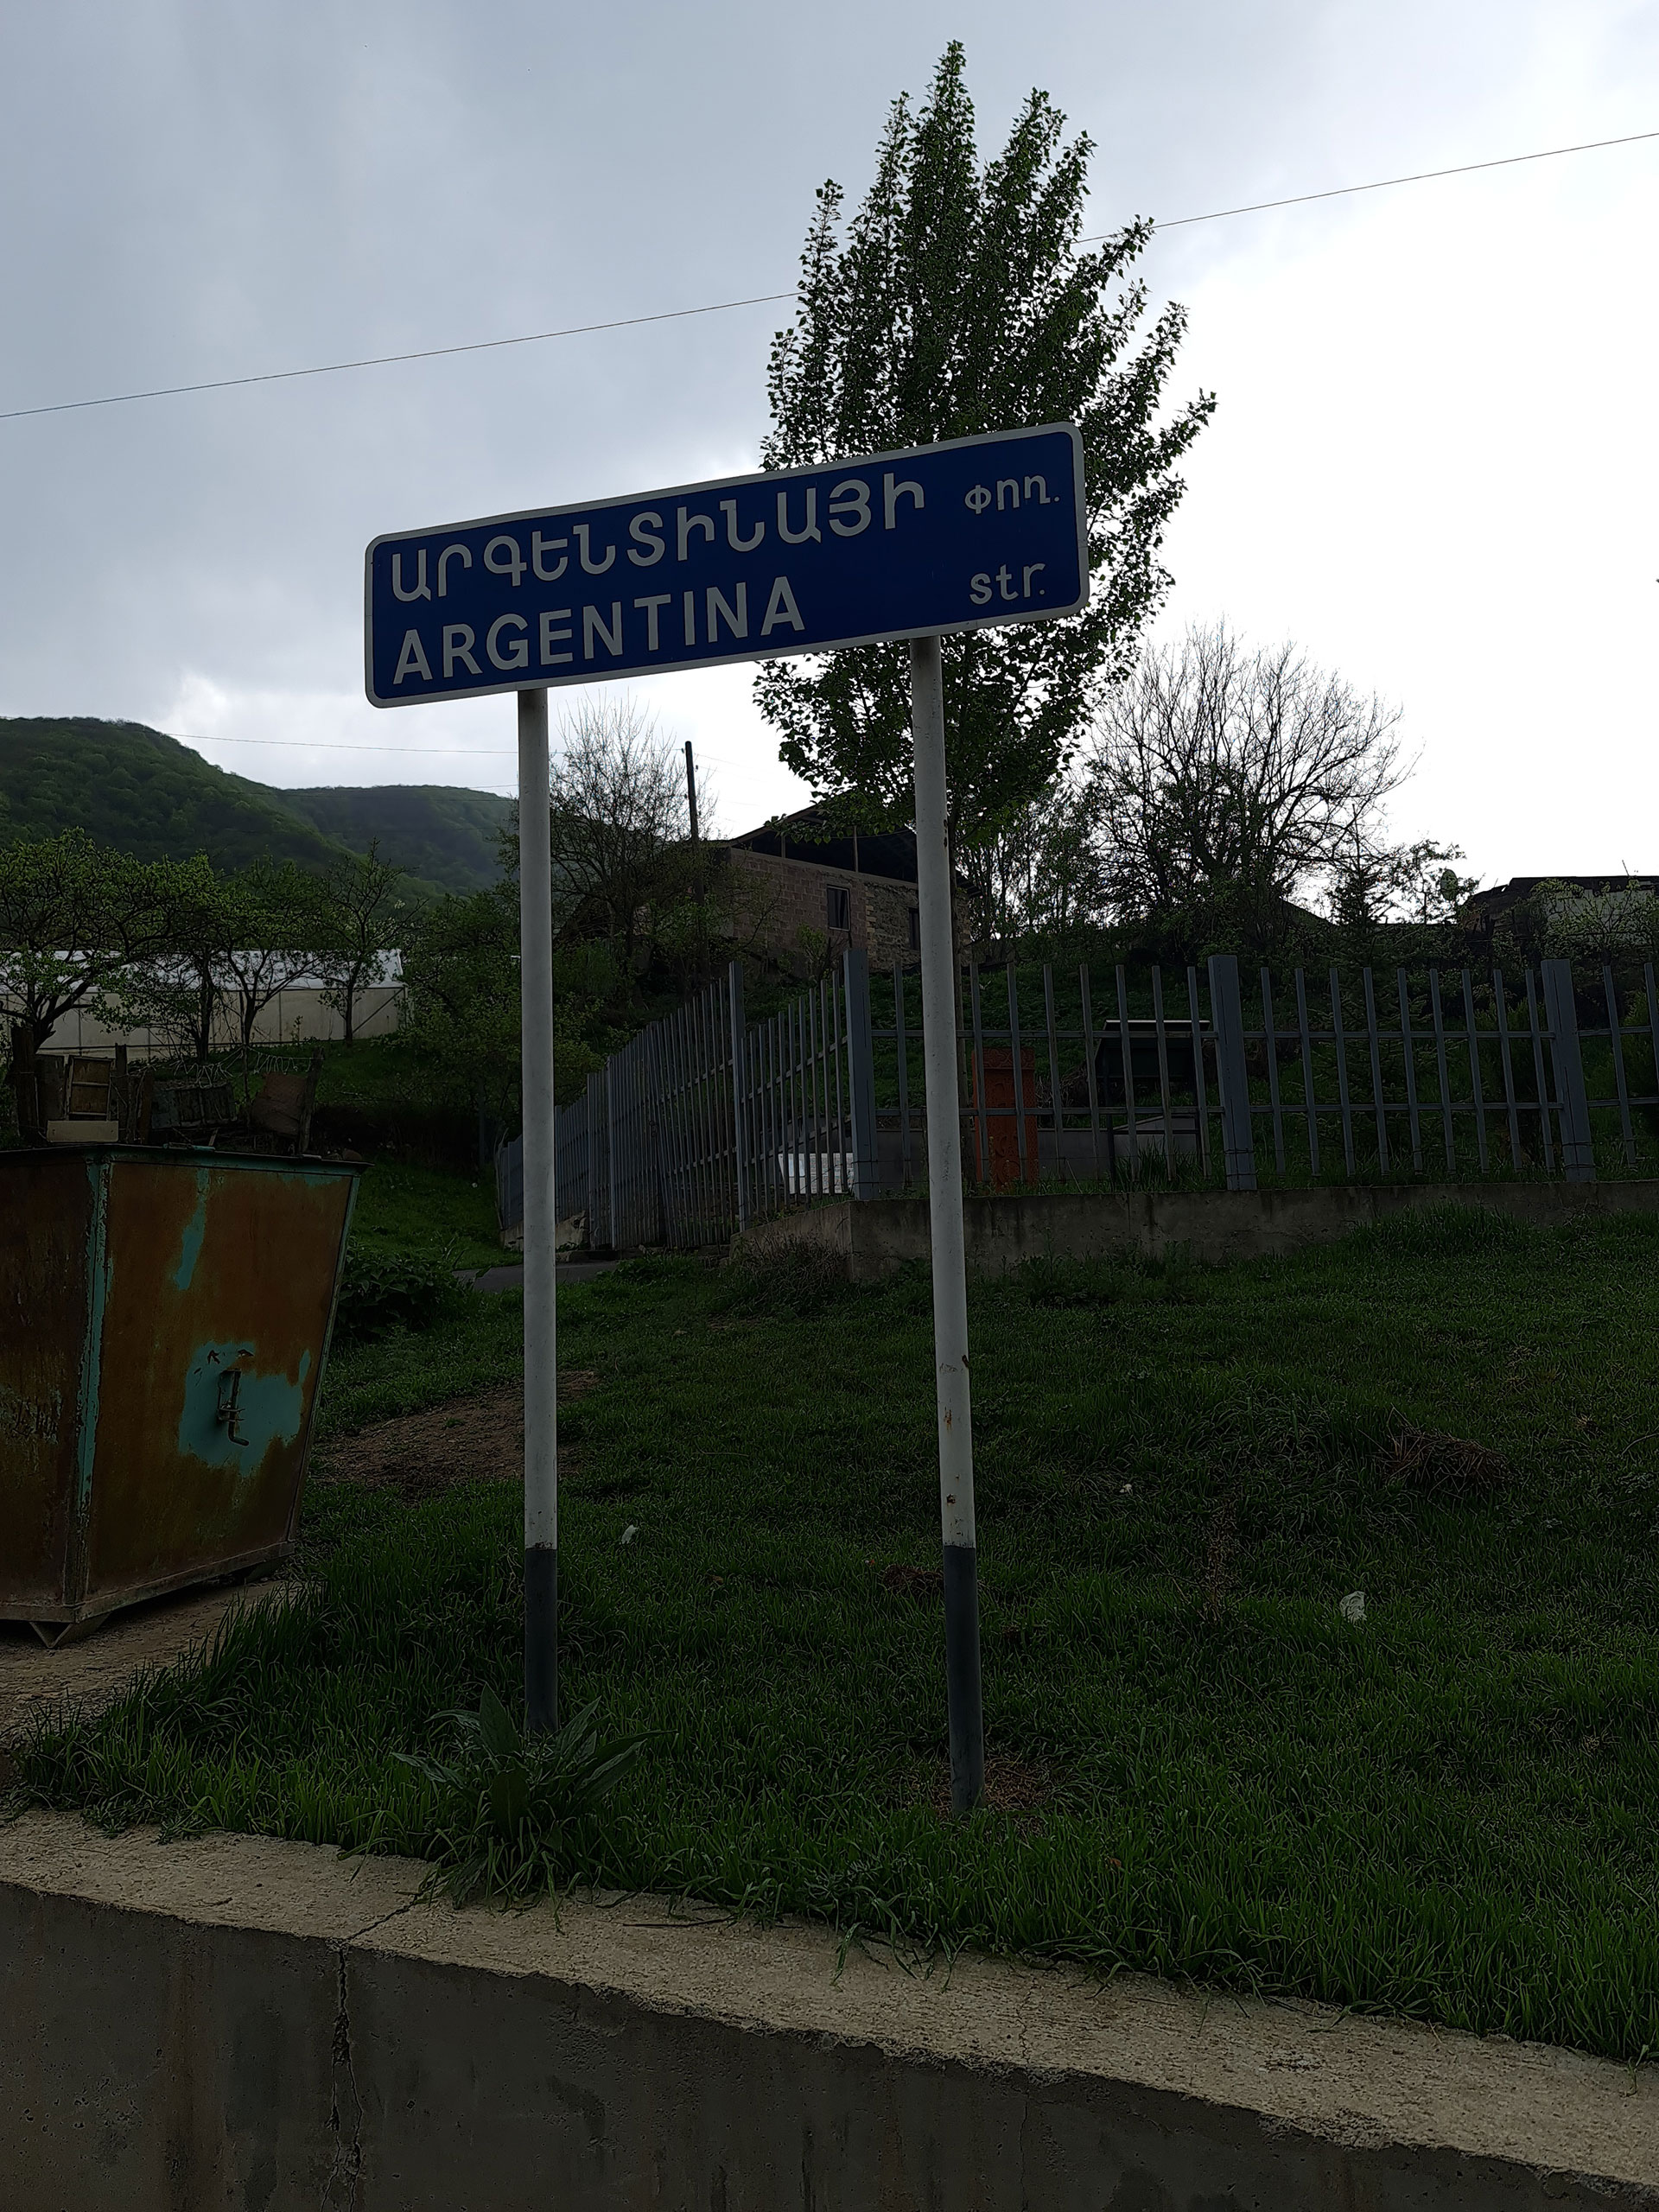 La calle principal del pueblo lleva el nombre de "Argentina" en agradecimiento a las cuatro familias de la diáspora que ayudaron a reconstruir esa región